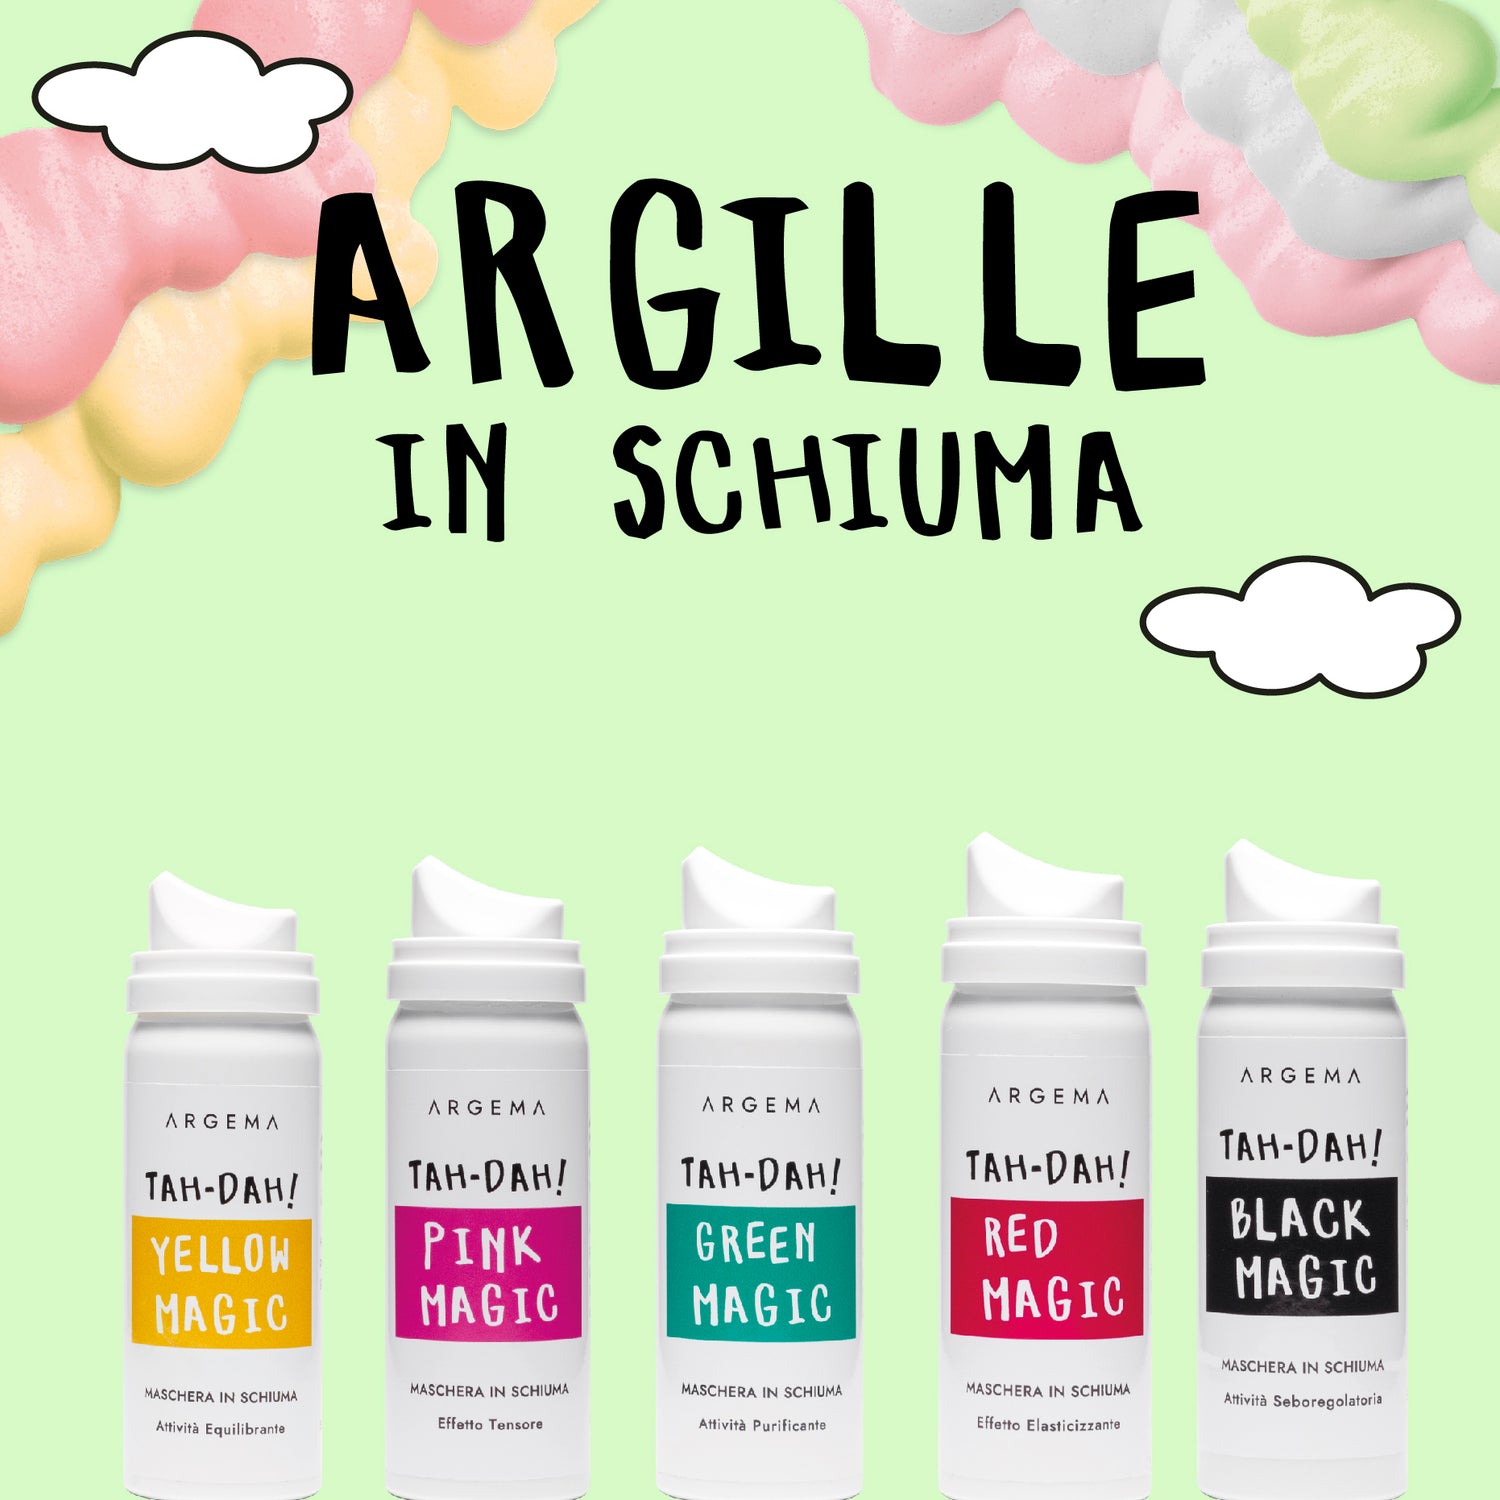 Argille in Schiuma